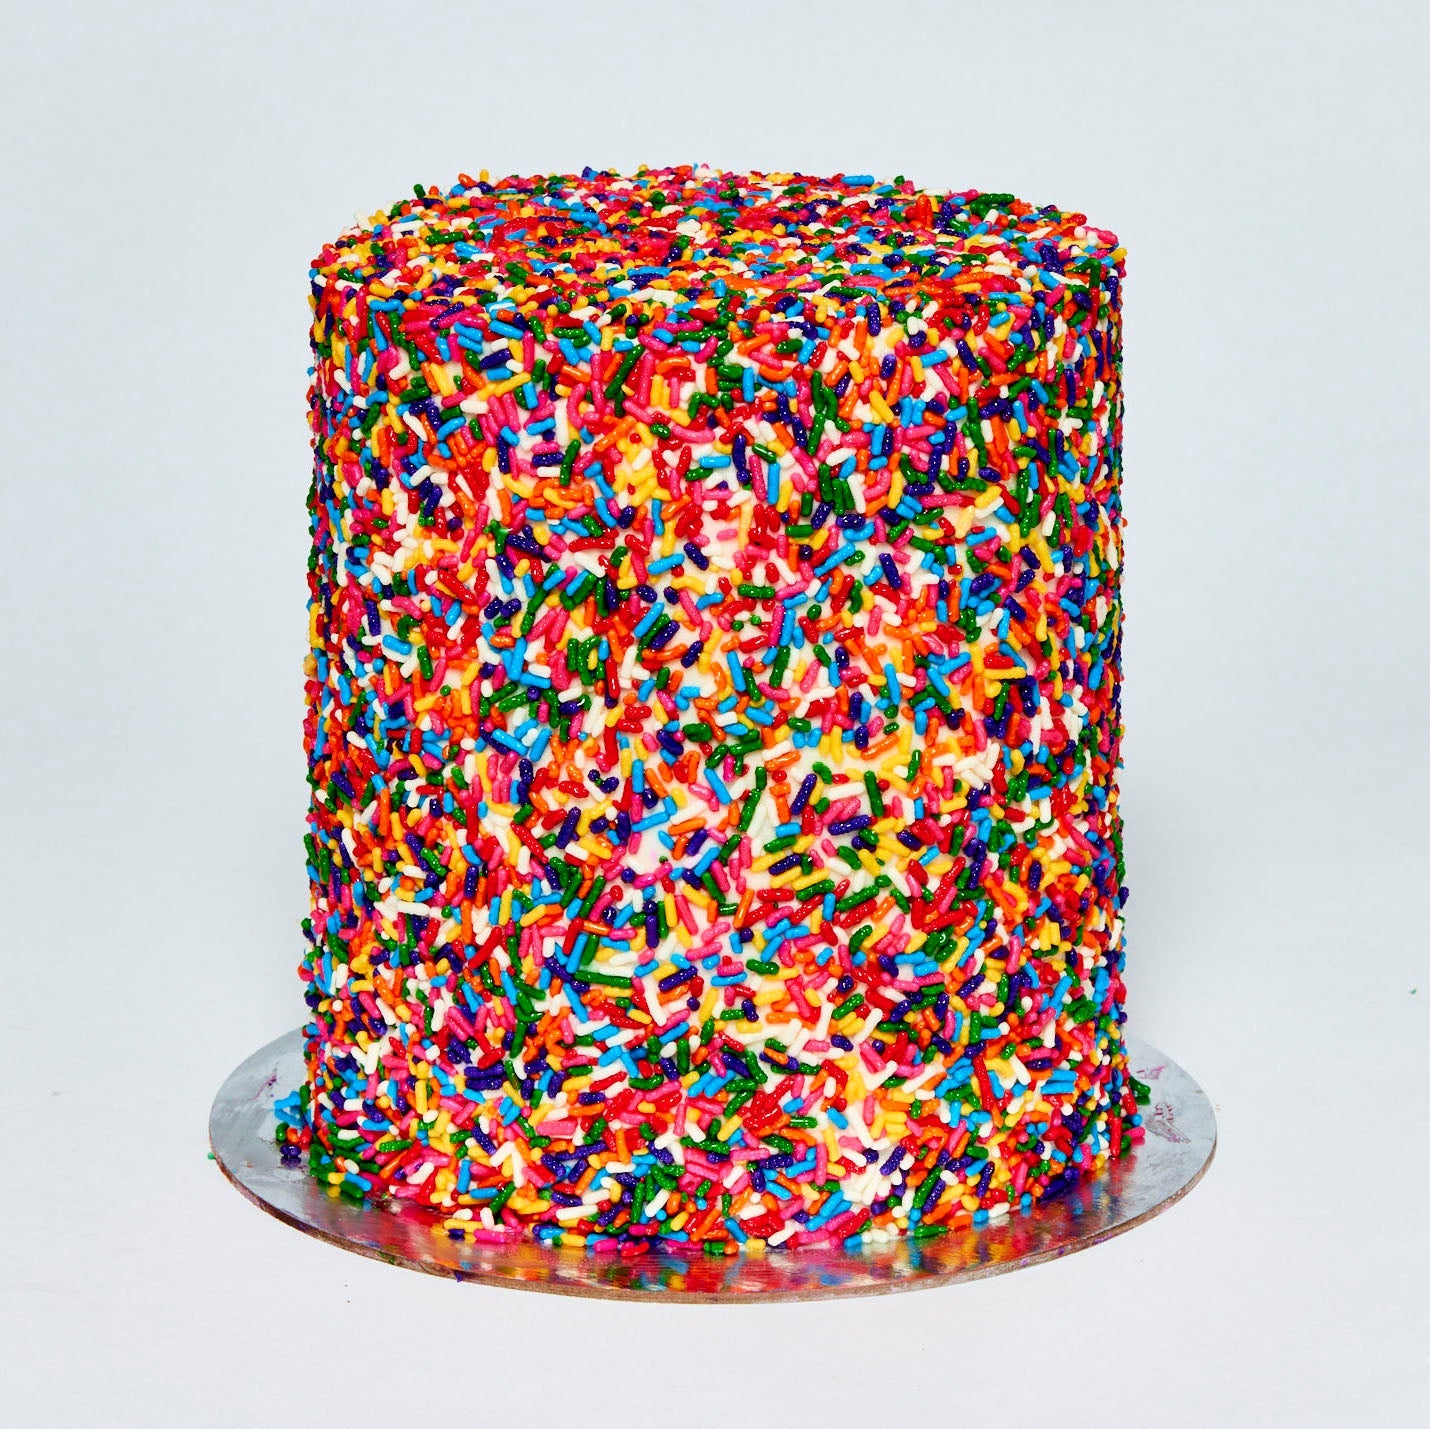 Midi Rainbow Cake!